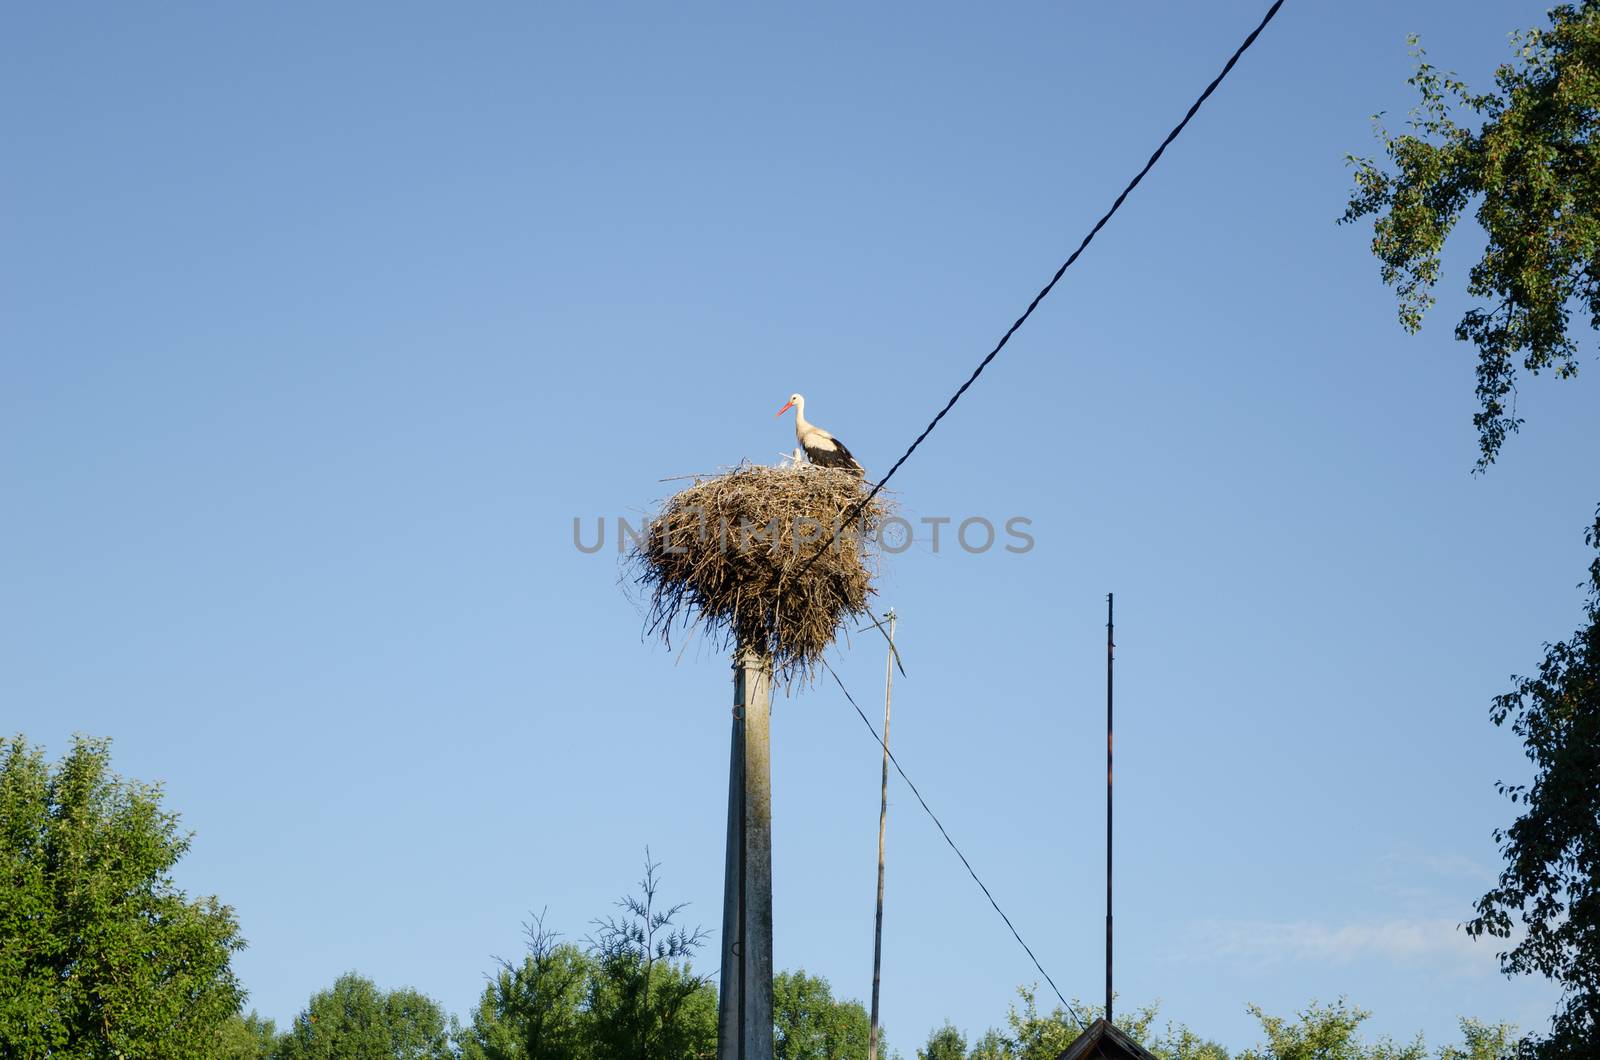 stork nest on electric pole on blue sky background by sauletas